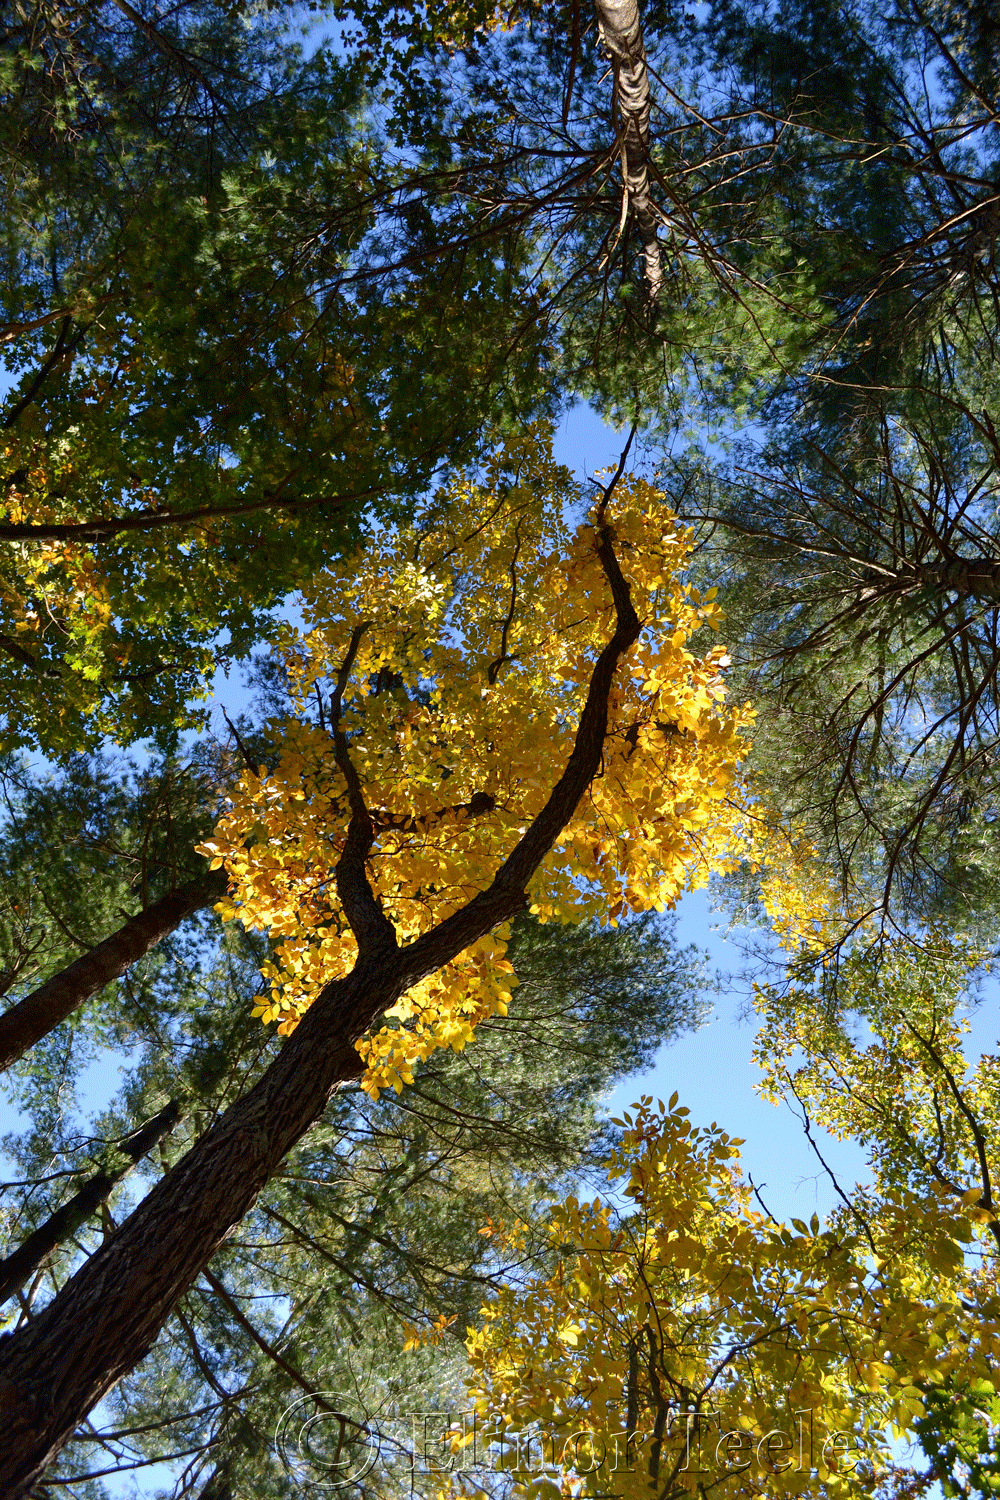 Fall Foliage, Topsfield MA